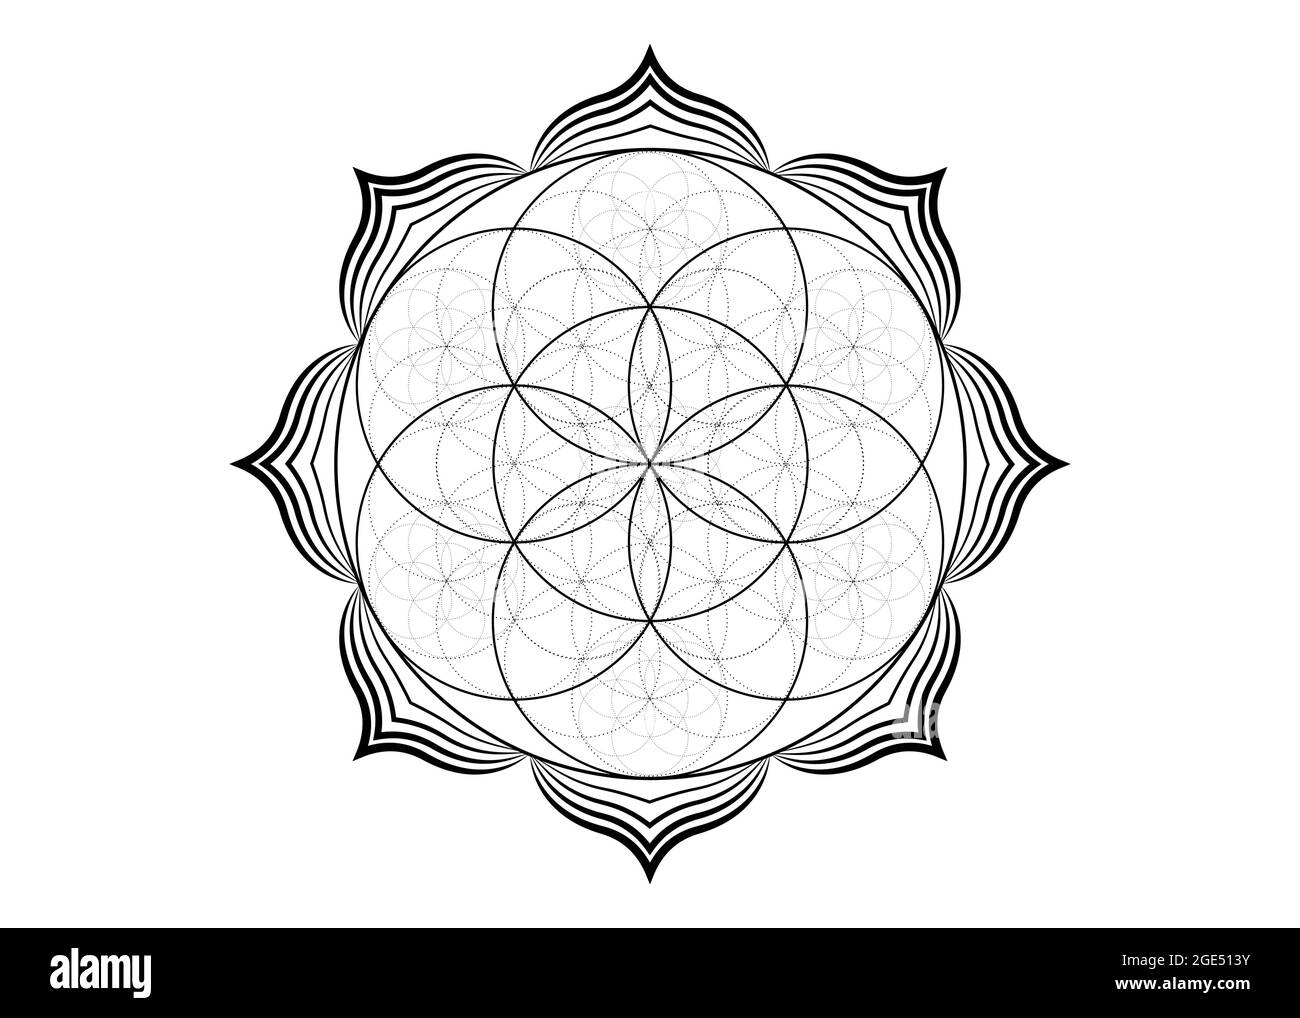 Seed Blume des Lebens Lotus-Symbol, yantra Mandala heilige Geometrie, Tattoo Symbol der Harmonie und Balance. Mystischer Talisman, schwarzer Linienvektor isoliert Stock Vektor